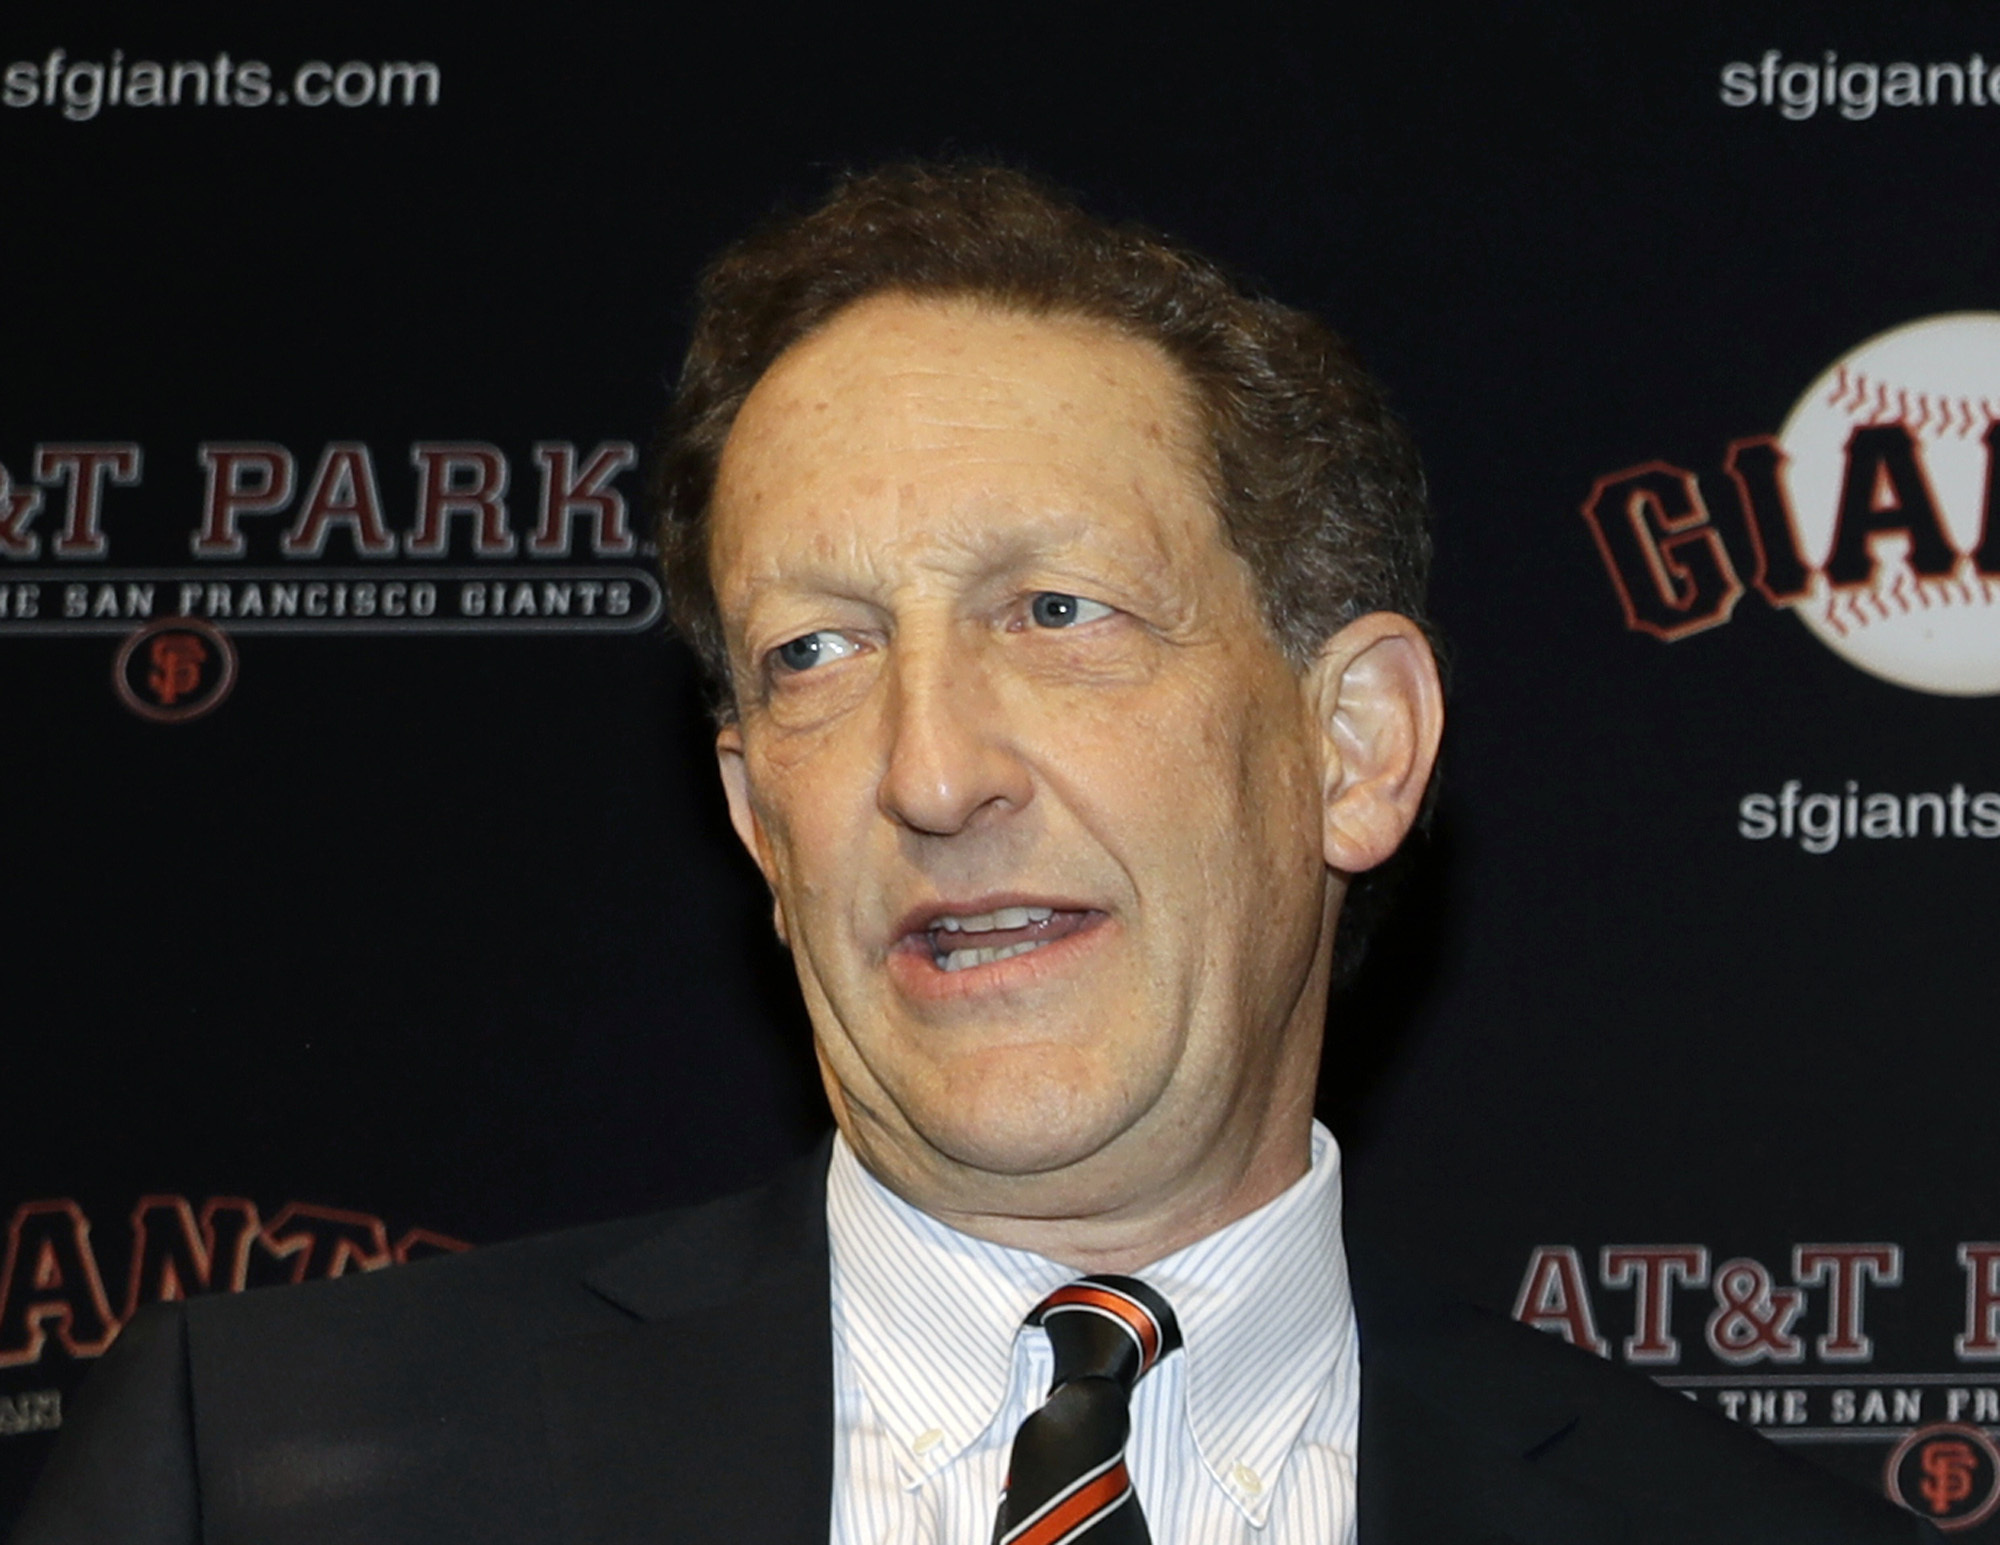 Giants CEO Larry Baer set to return after suspension